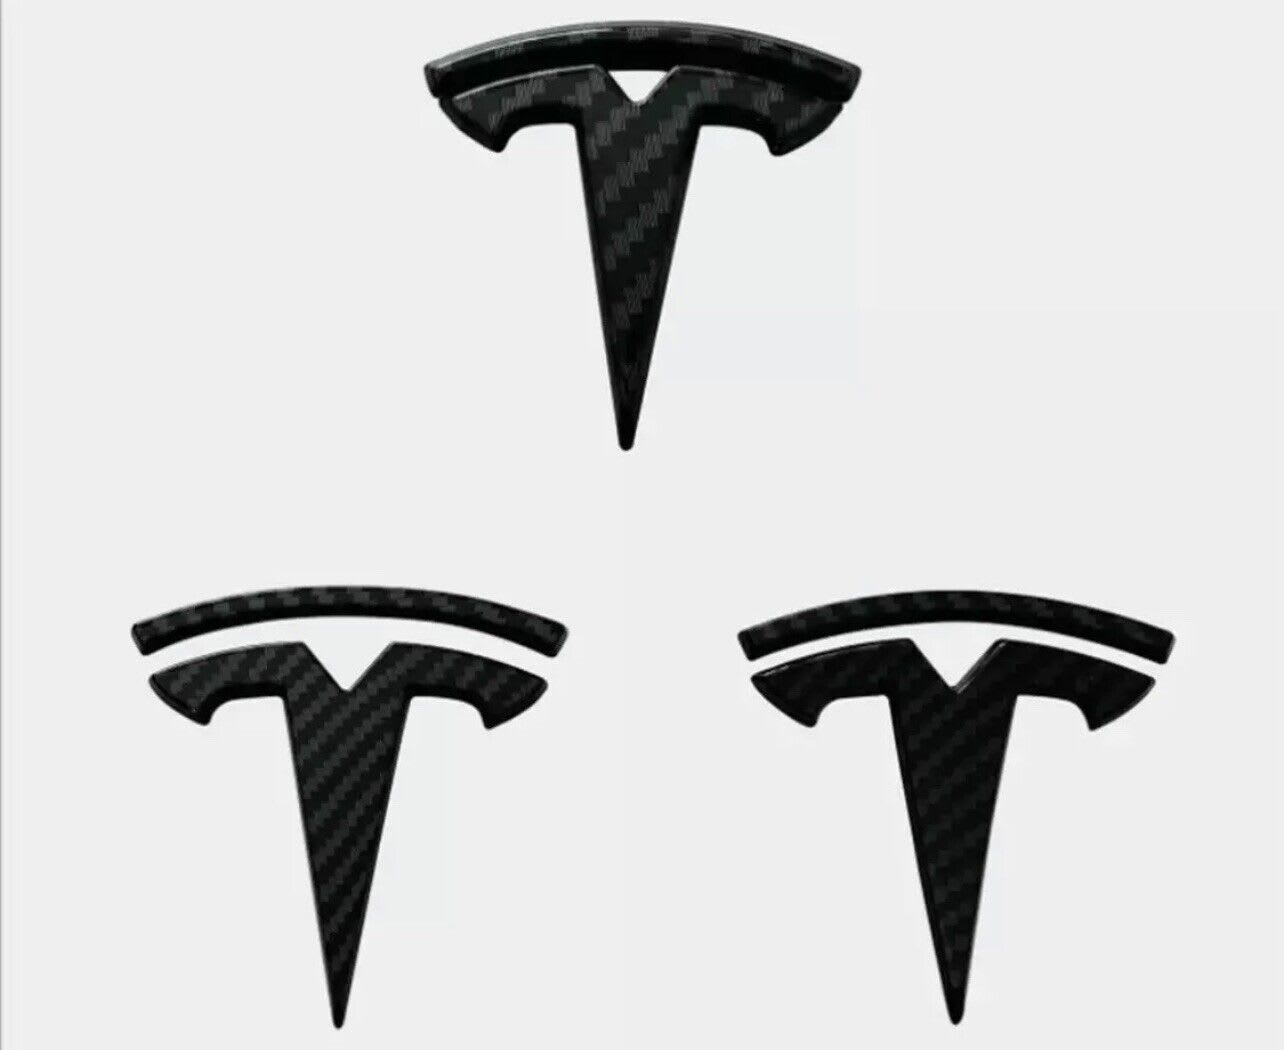 Tesla Logo Covers